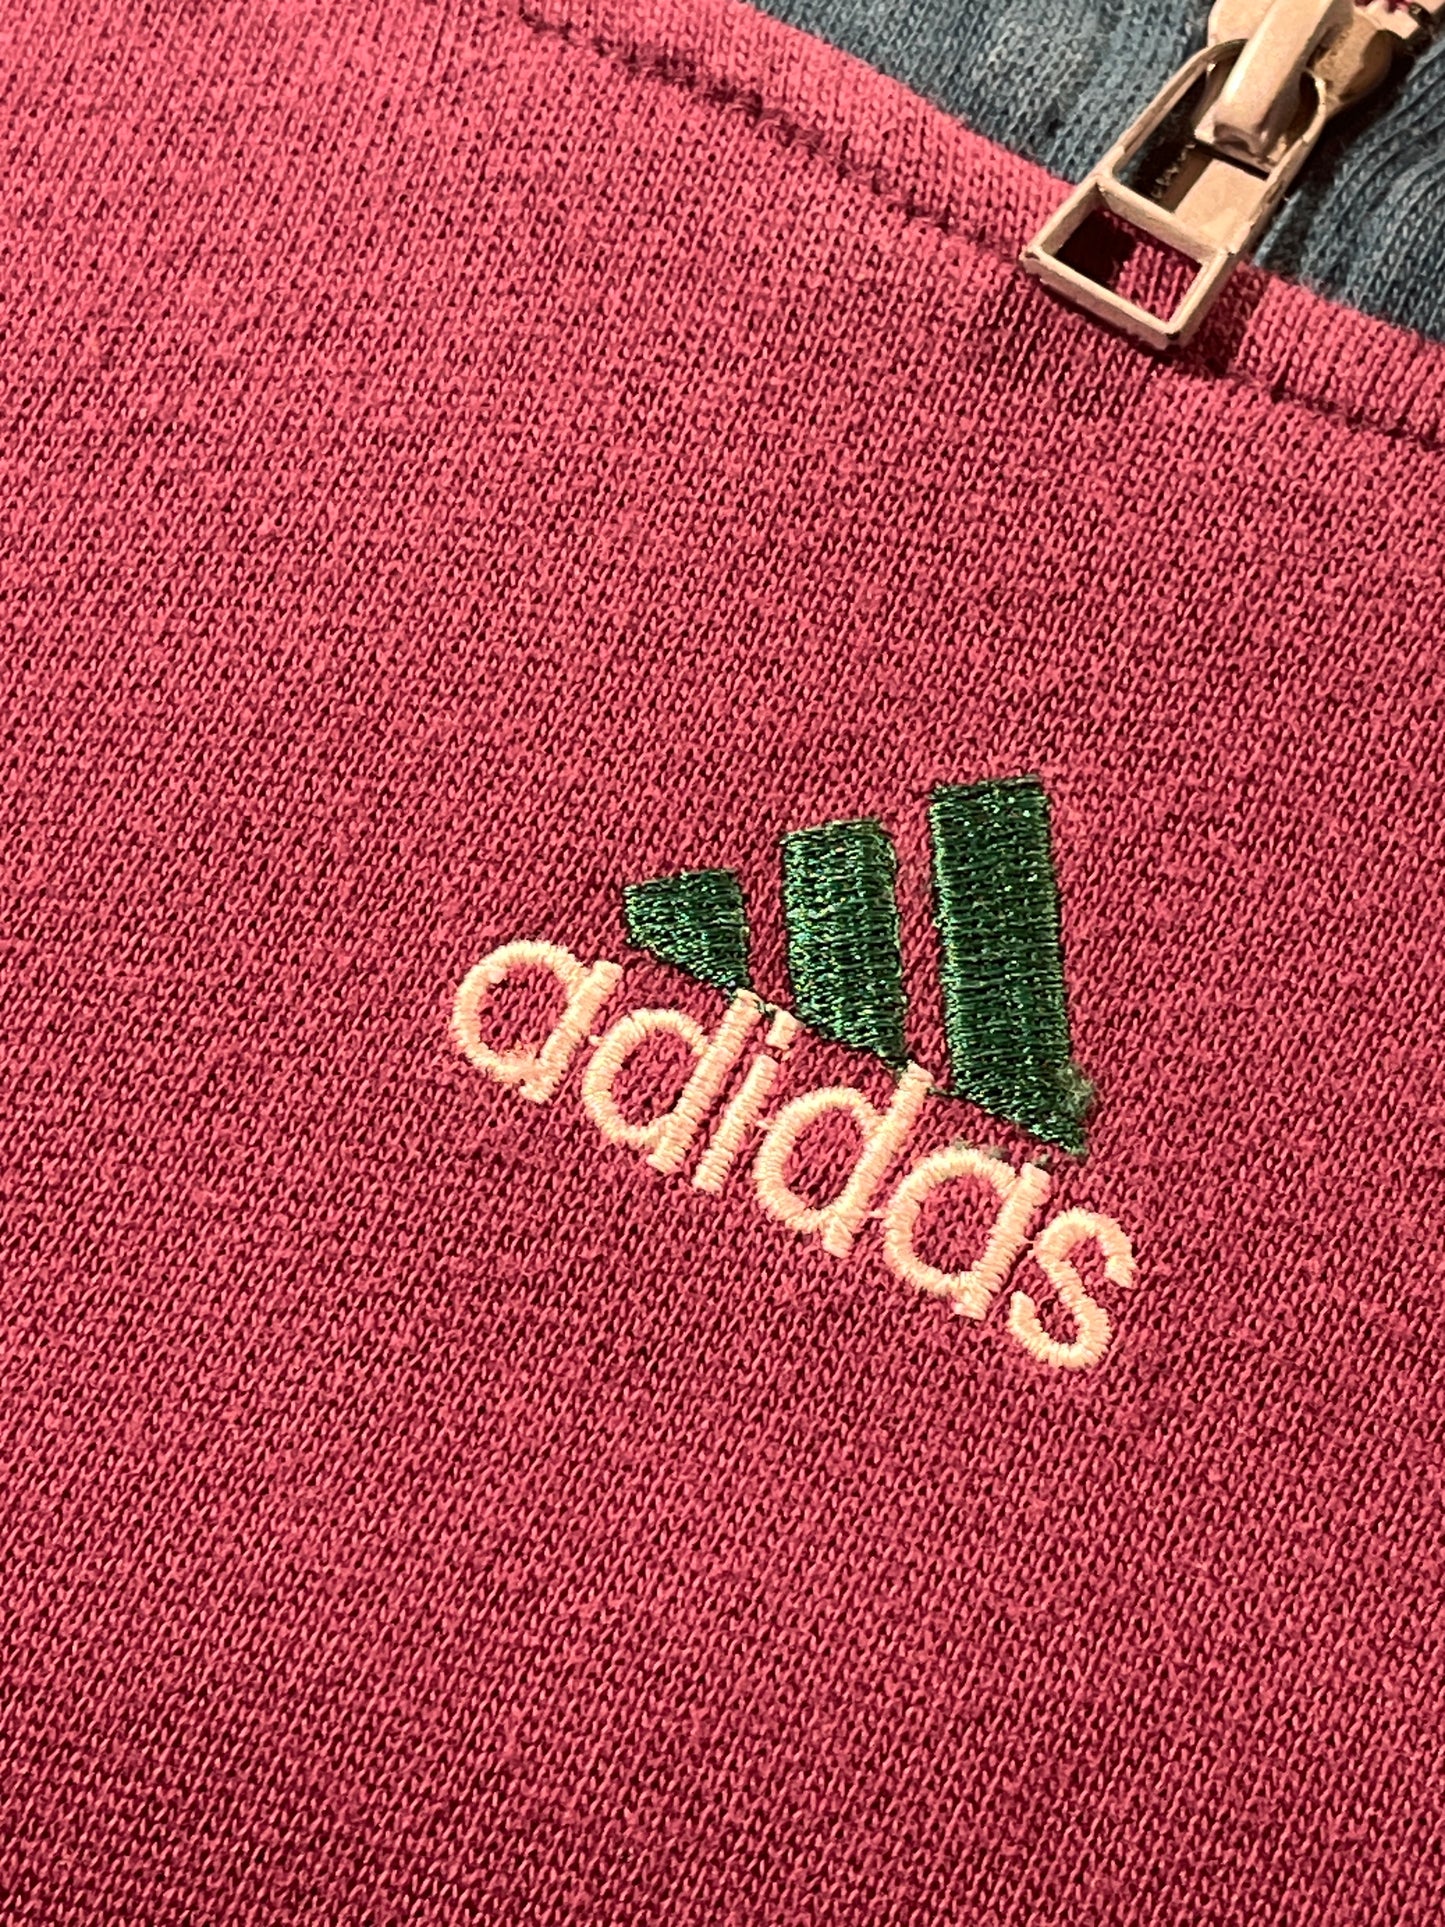 Vintage Adidas Polo Shirt Top